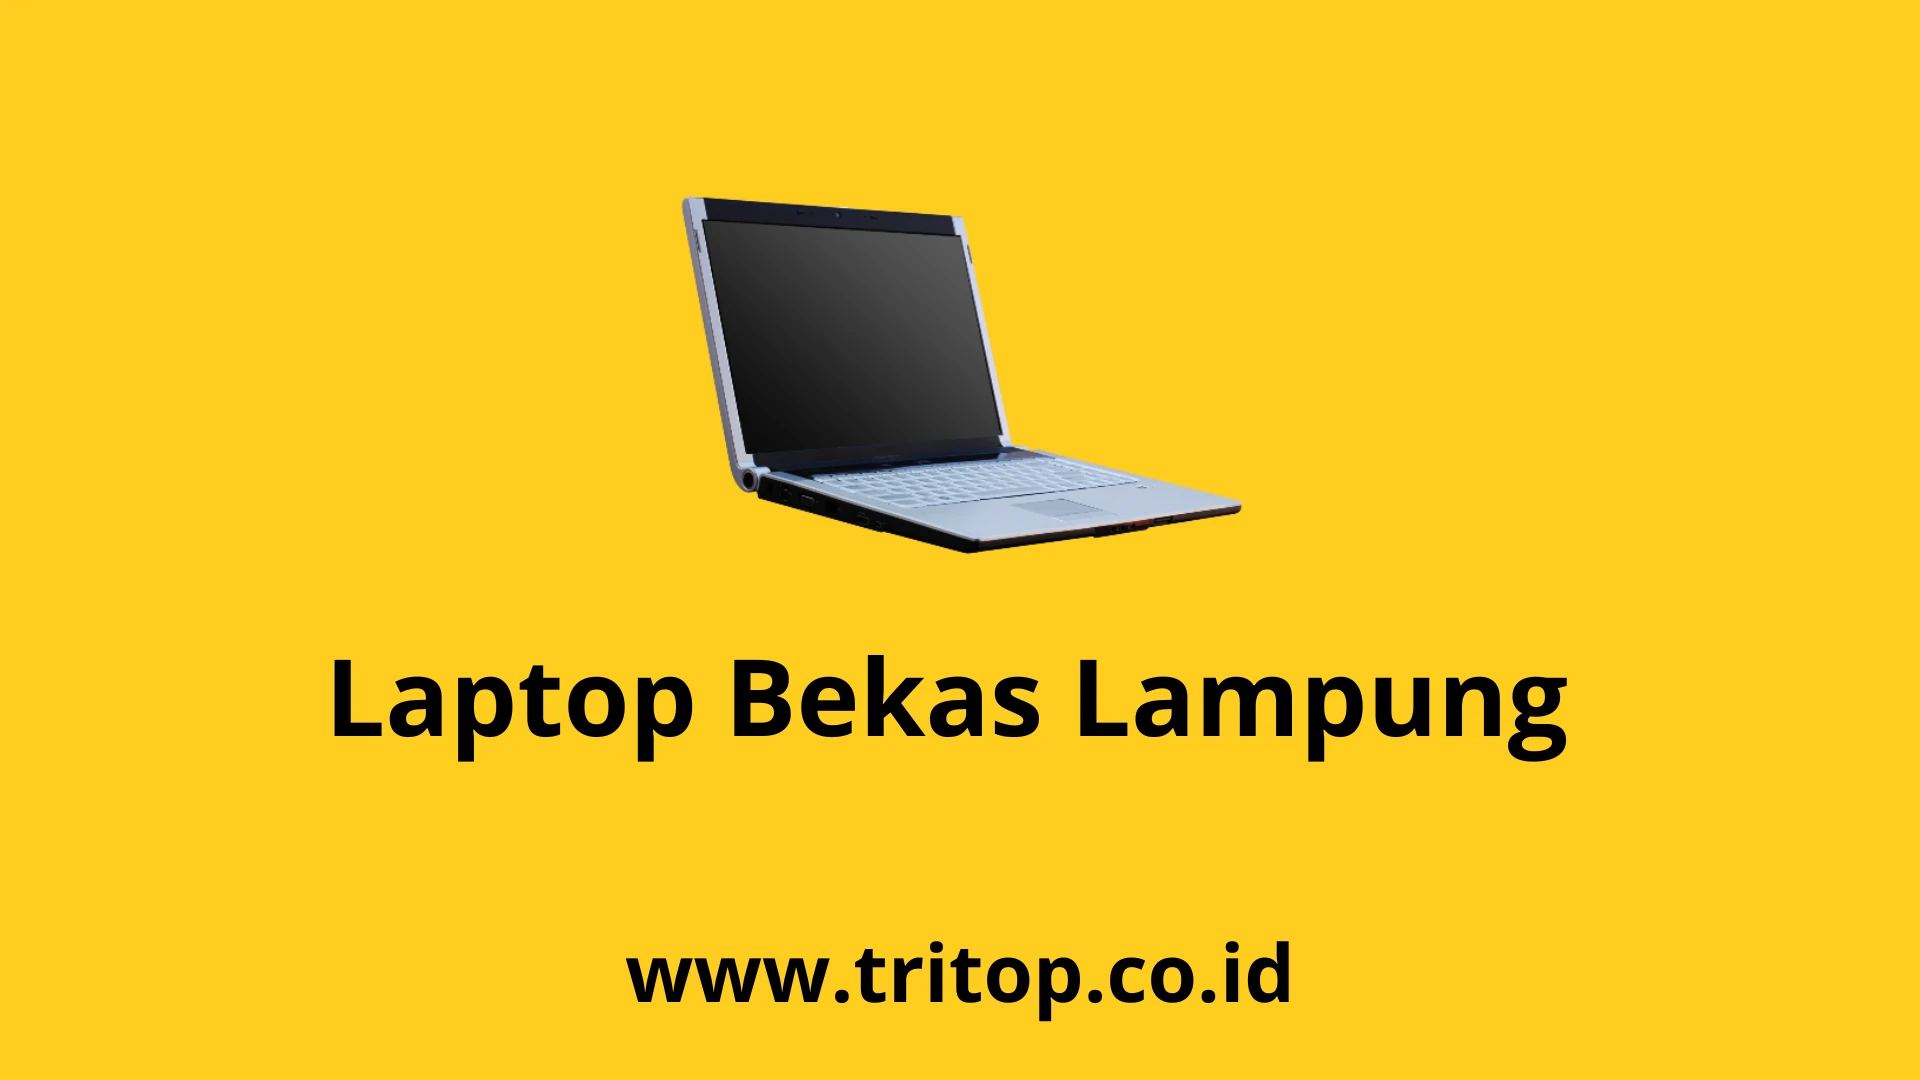 Laptop Bekas Lampung